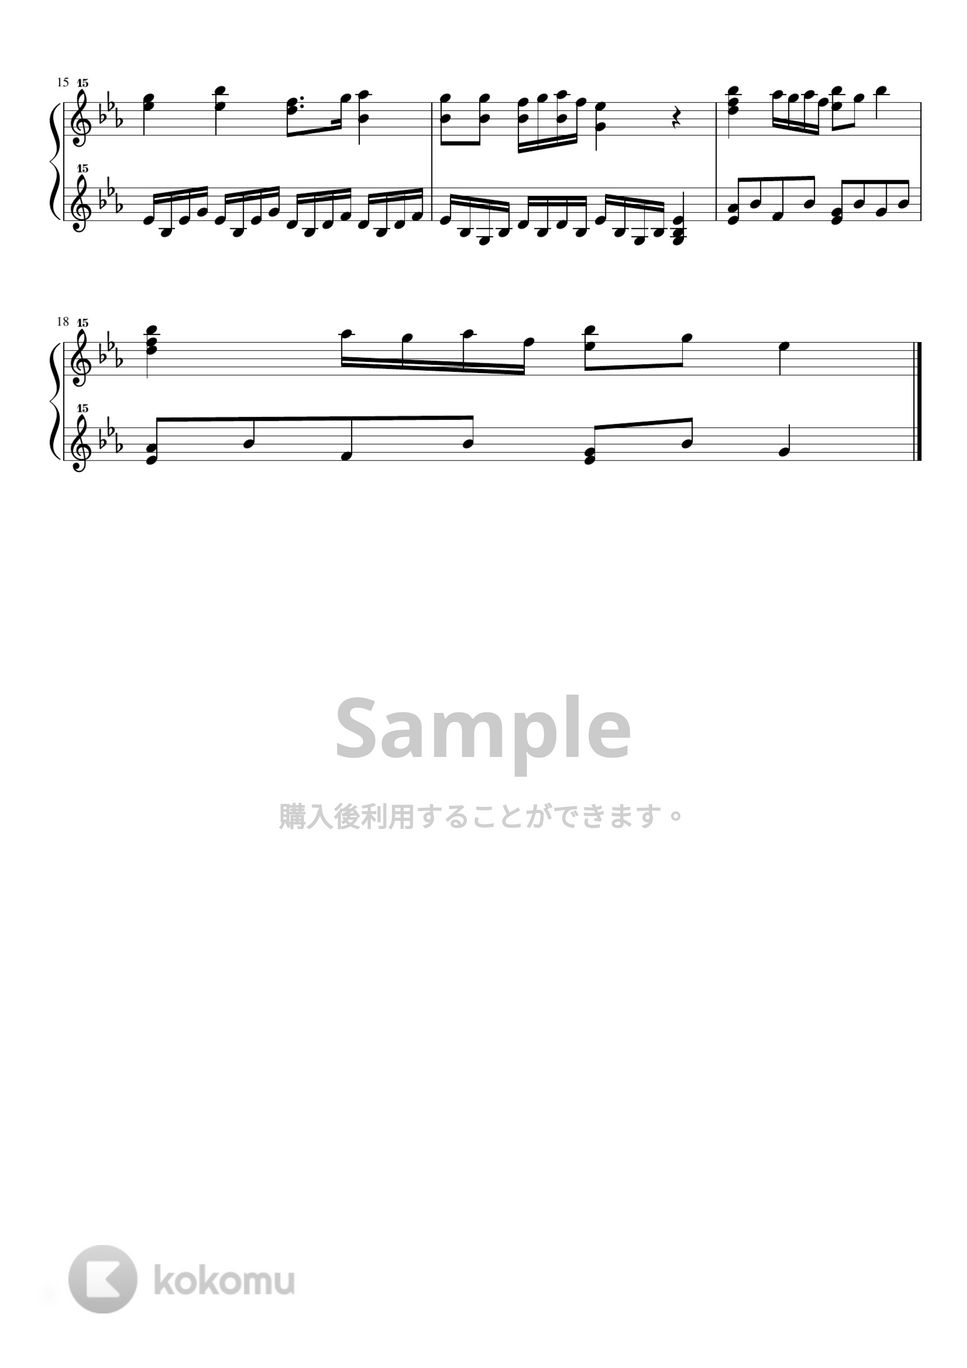 シューベルト - シューベルトの子守唄 op.98-2 (トイピアノ / クラシック / 32鍵盤) by 川西三裕